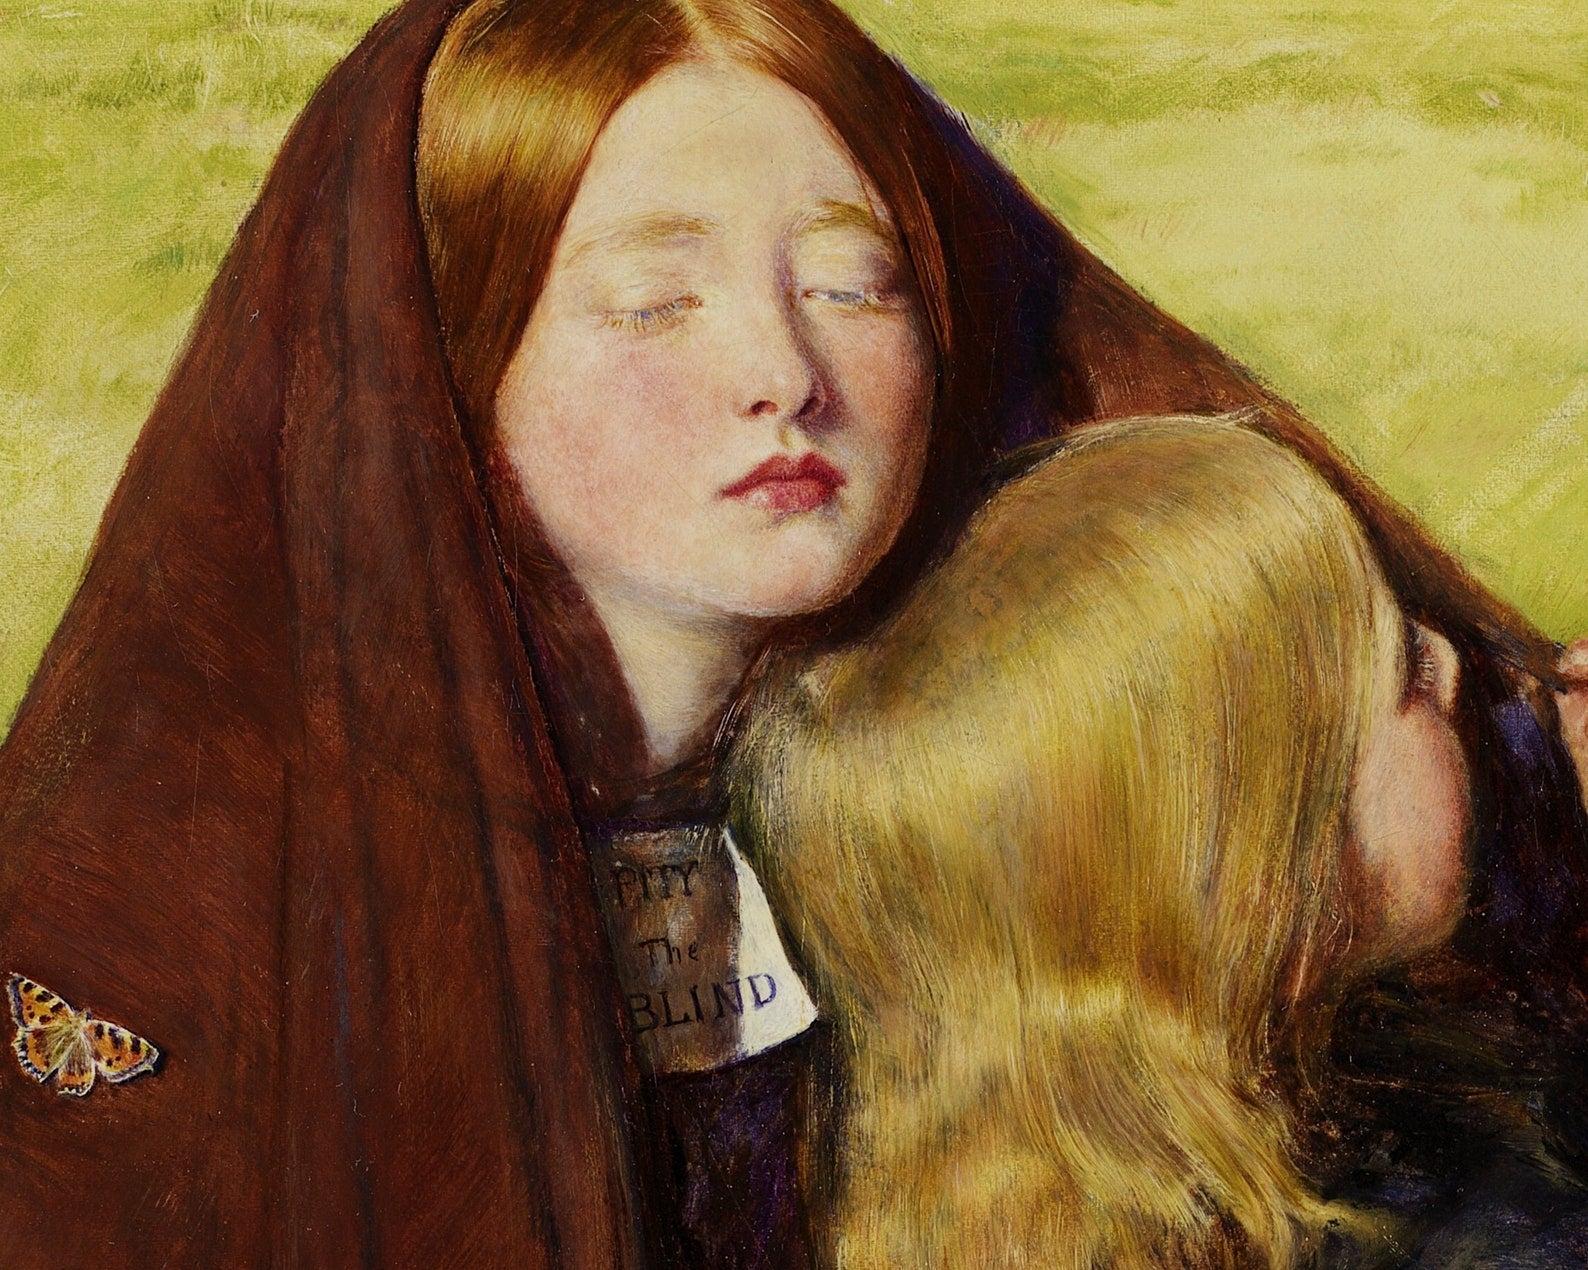 John Everett Millais "The Blind Girl" (c.1856) - Mabon Gallery